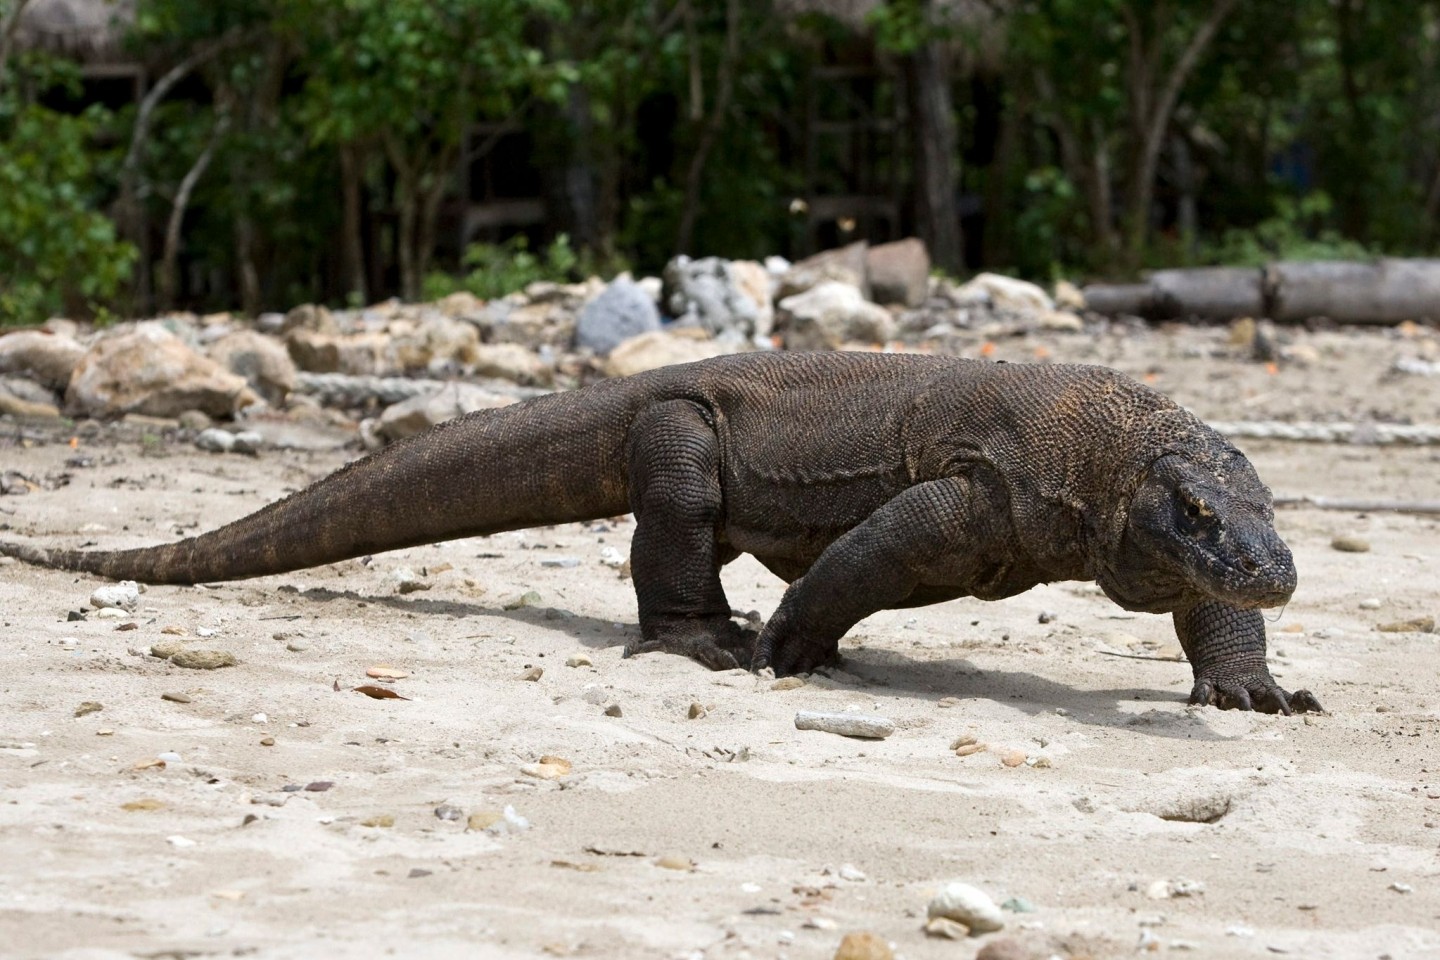 Der Komodowaran, die größte lebende Echse der Welt, ist jetzt als «stark gefährdet» eingestuft worden.